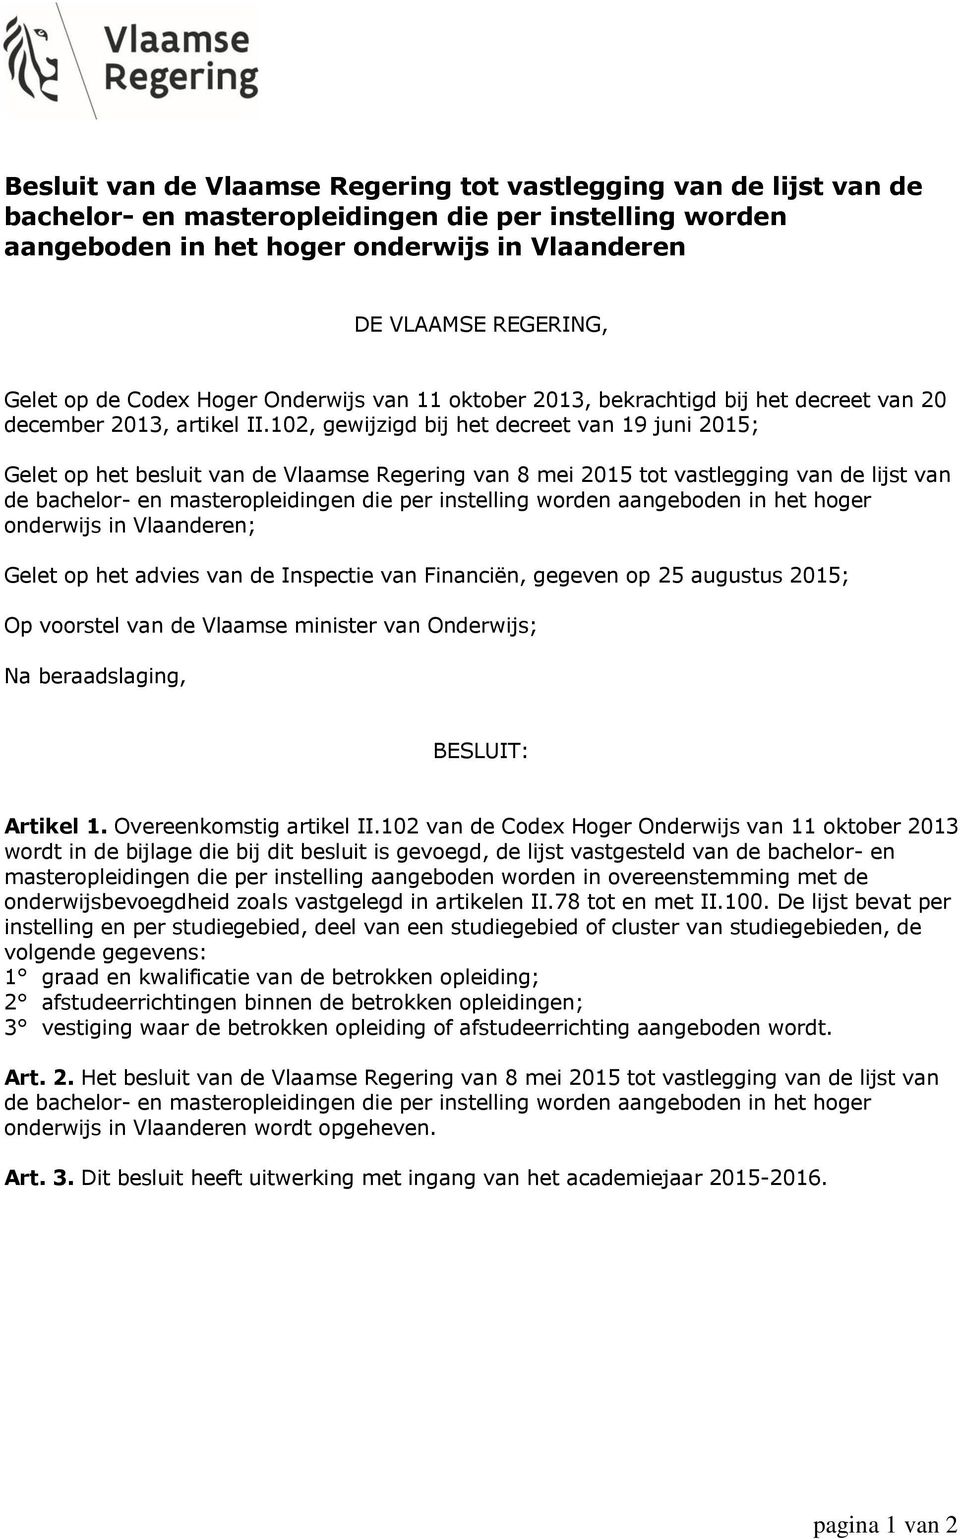 102, gewijzigd bij het decreet van 19 juni 2015; Gelet op het besluit van de Vlaamse Regering van 8 mei 2015 tot vastlegging van de lijst van de bachelor- en masteropleidingen die per instelling